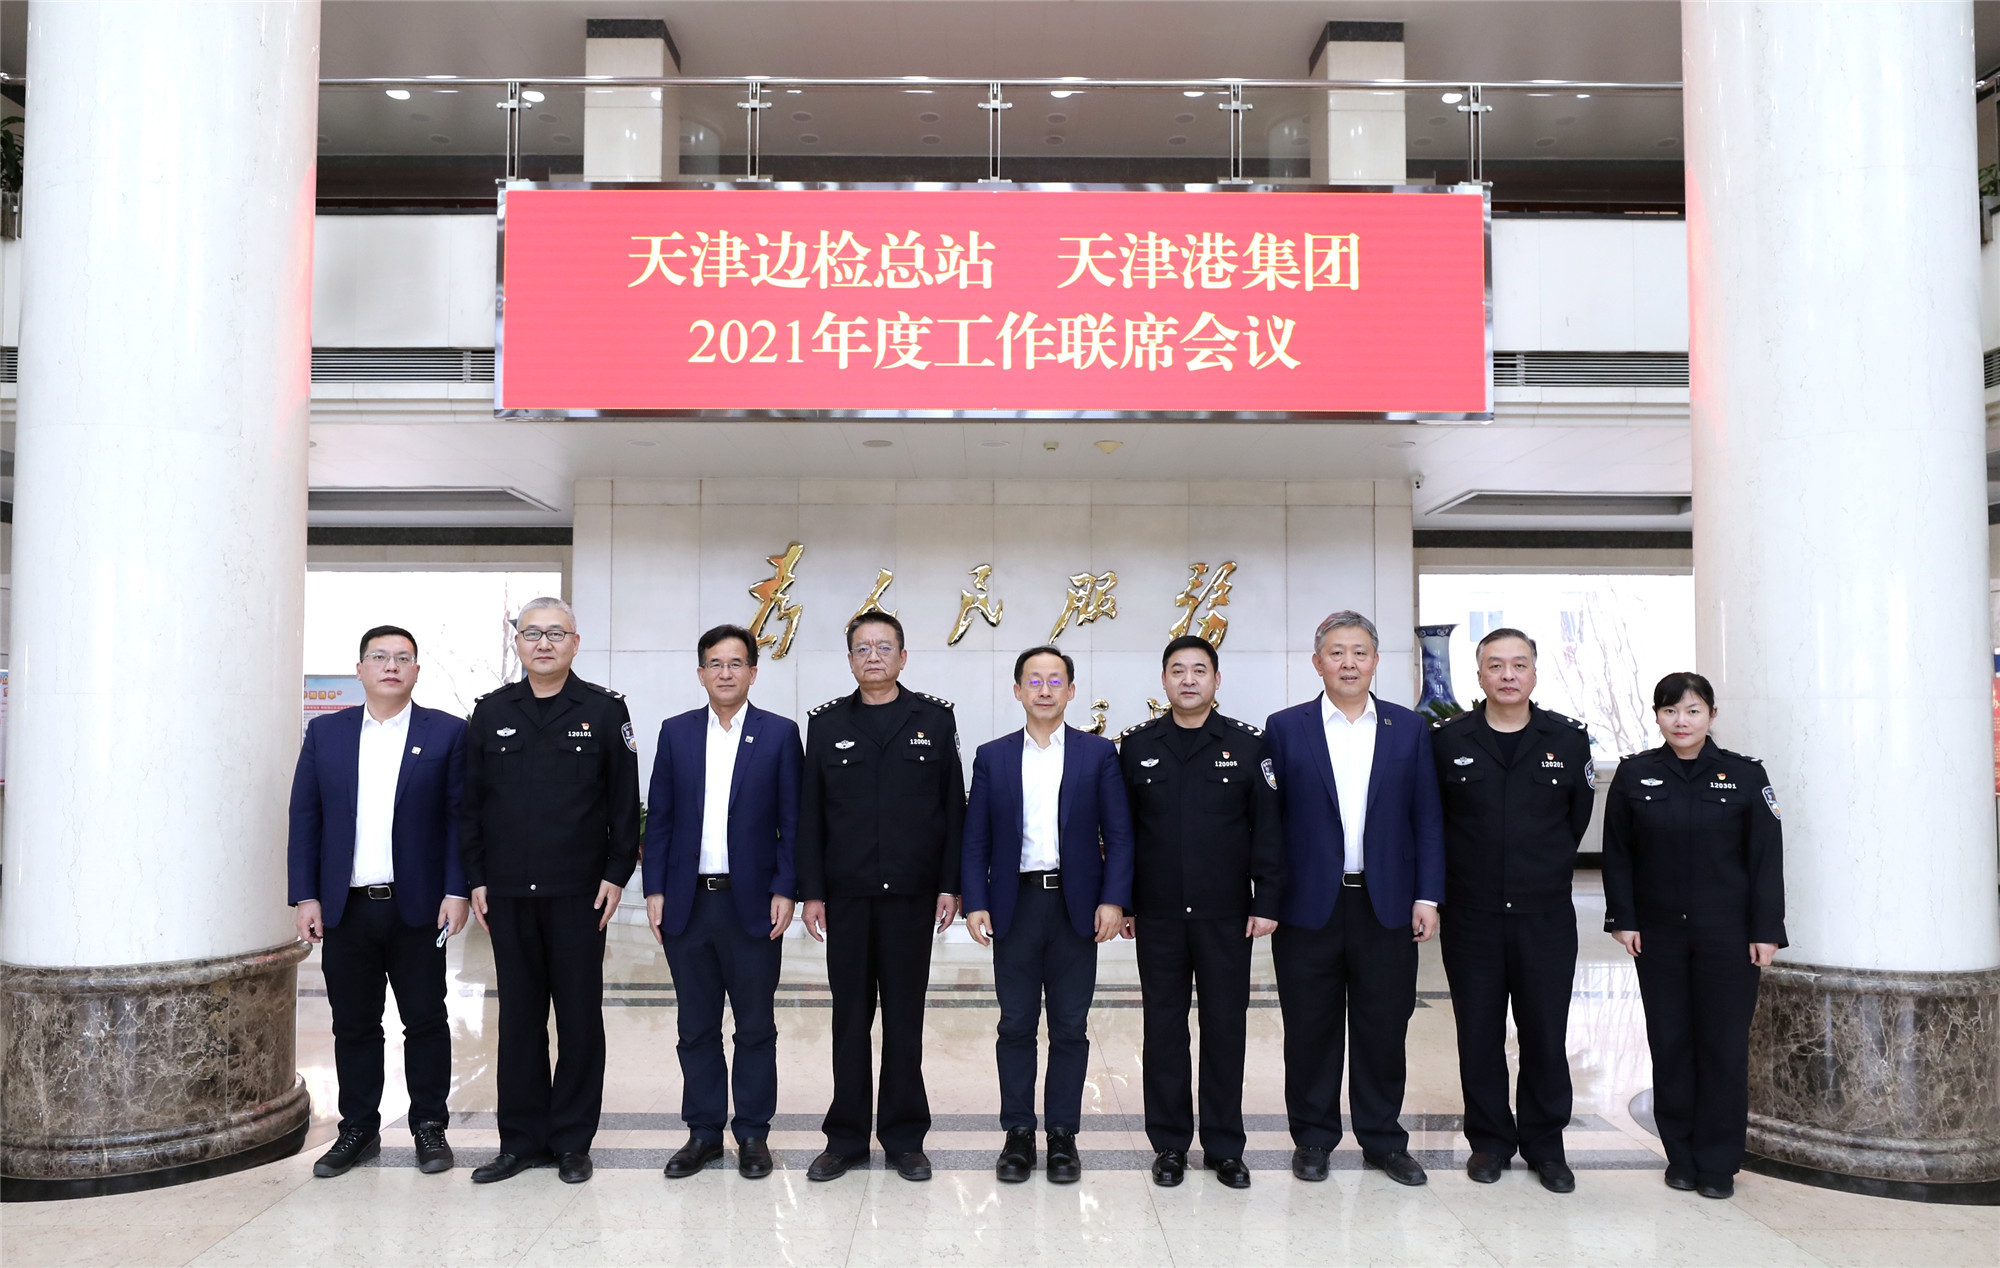 天津港集团与天津边检总站召开年度工作联席会议